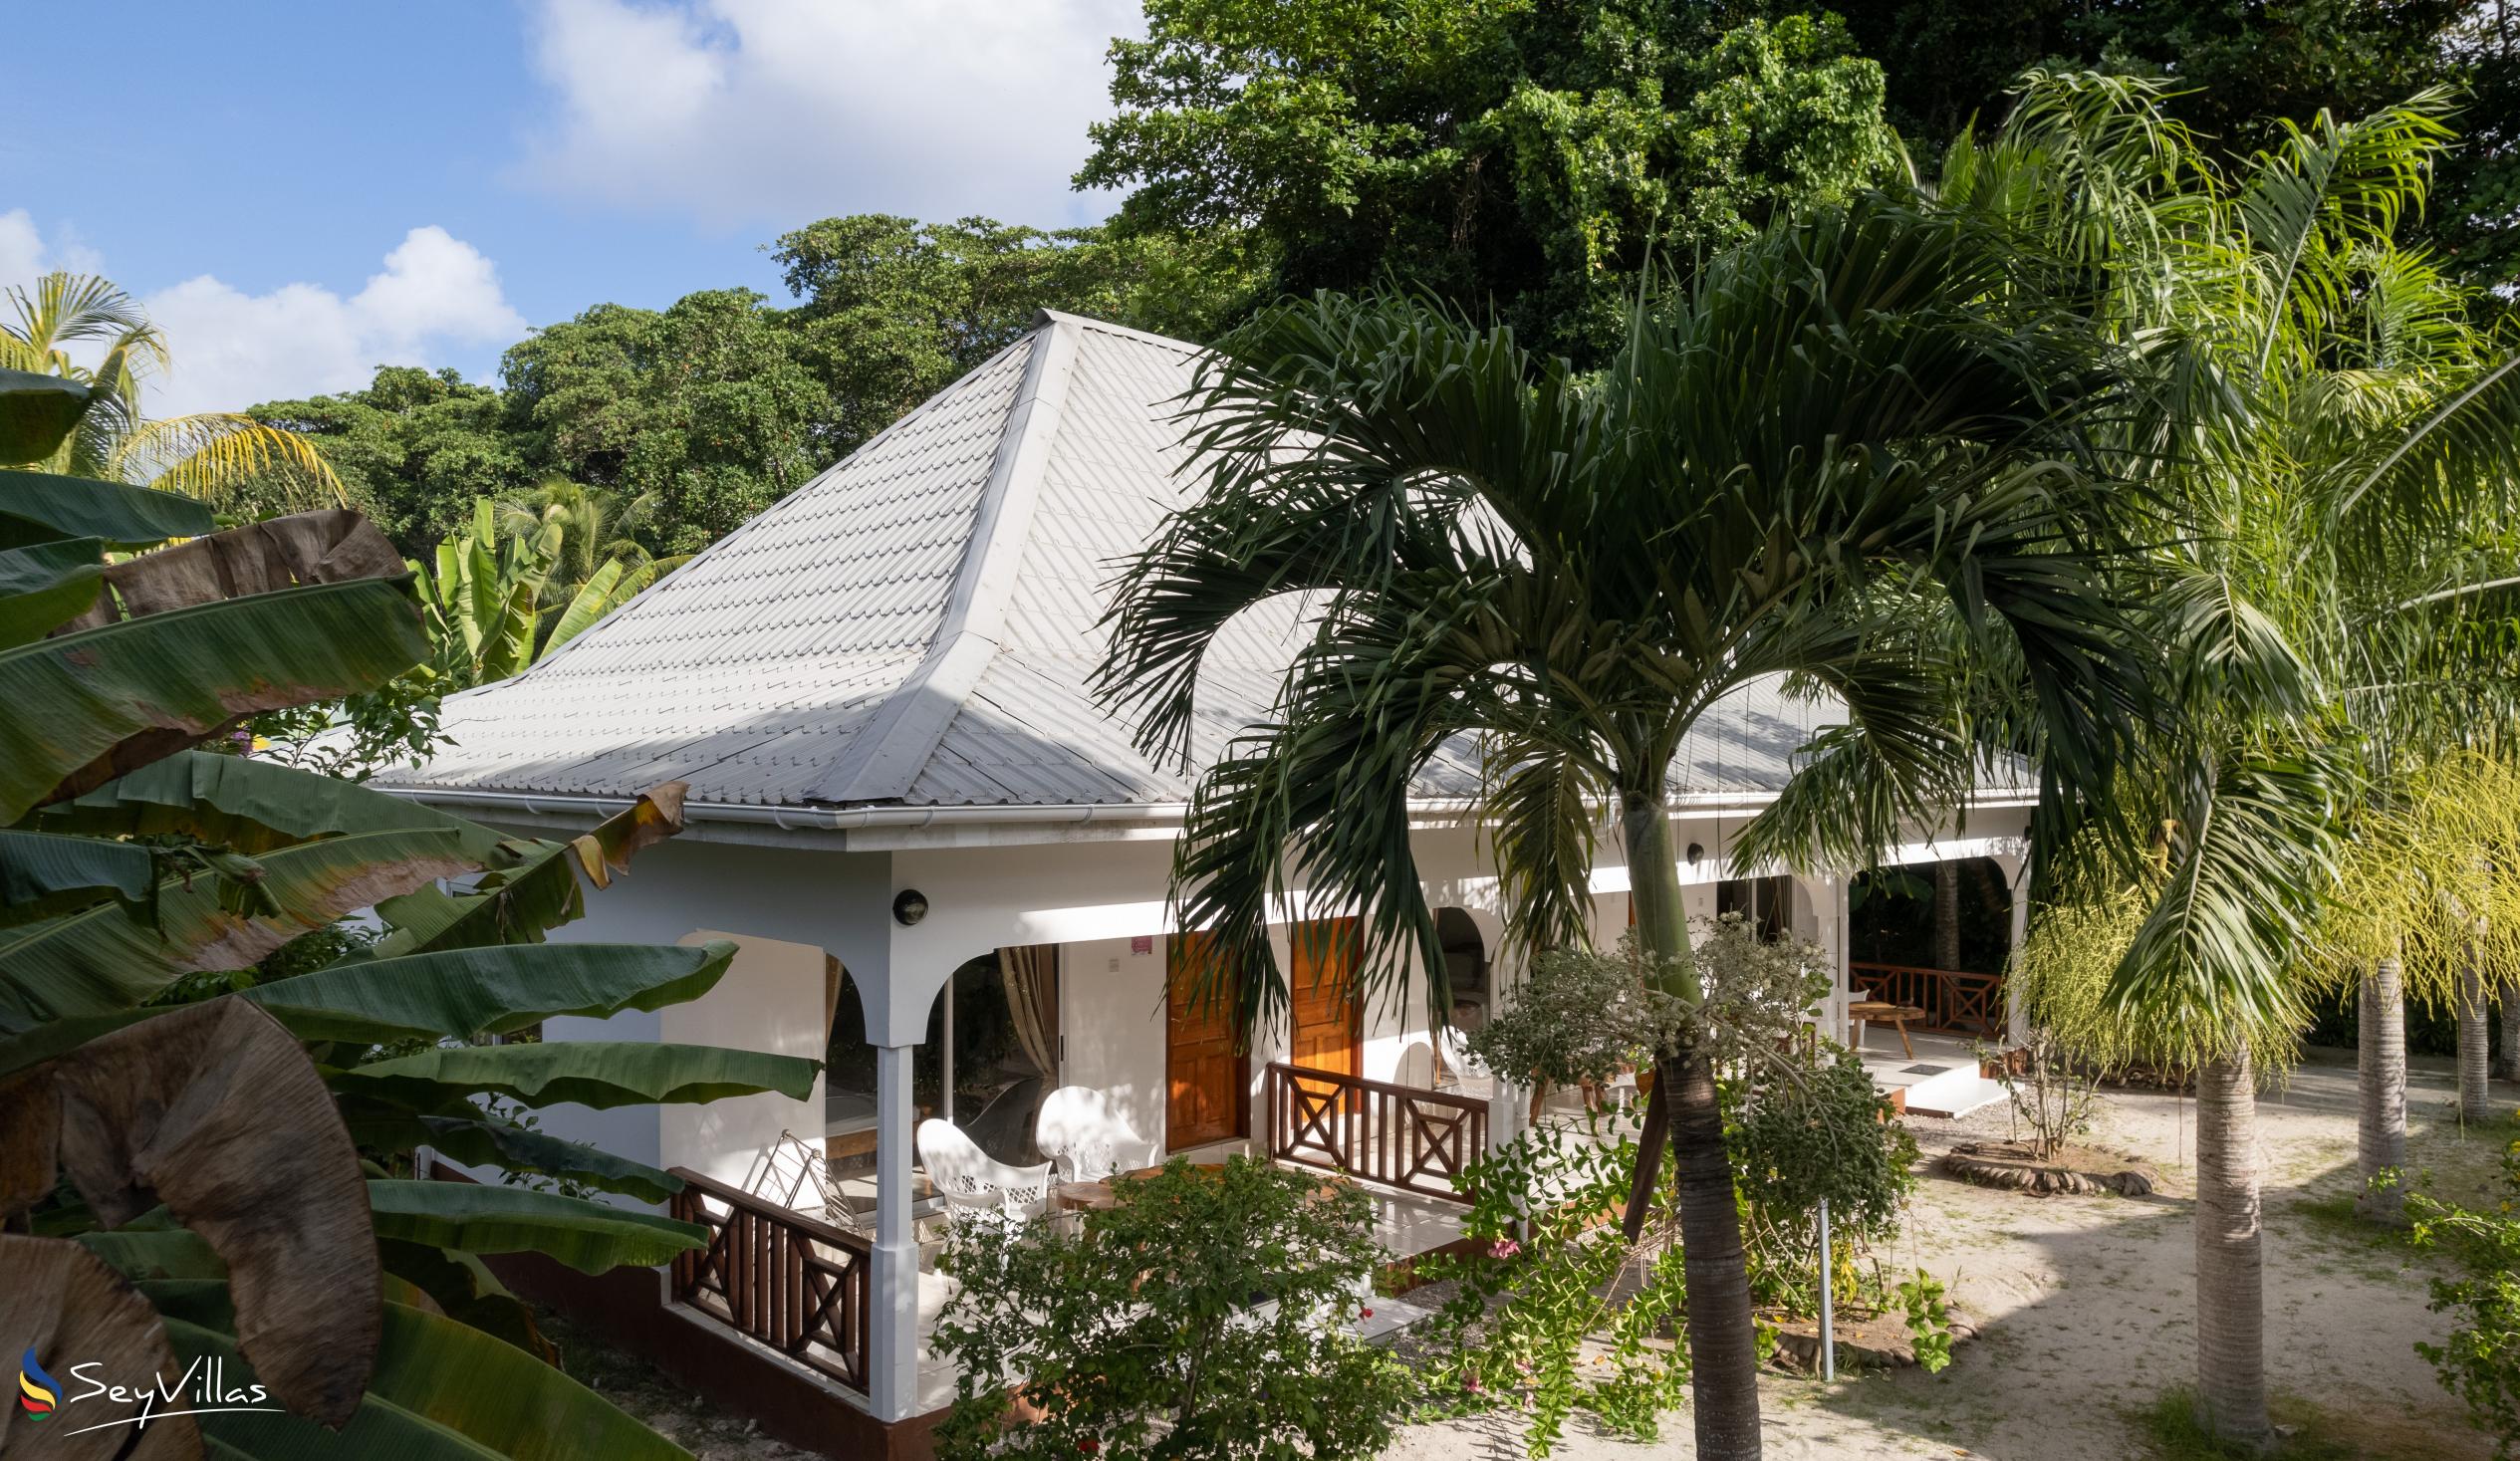 Foto 12: Villa Veuve - Aussenbereich - La Digue (Seychellen)